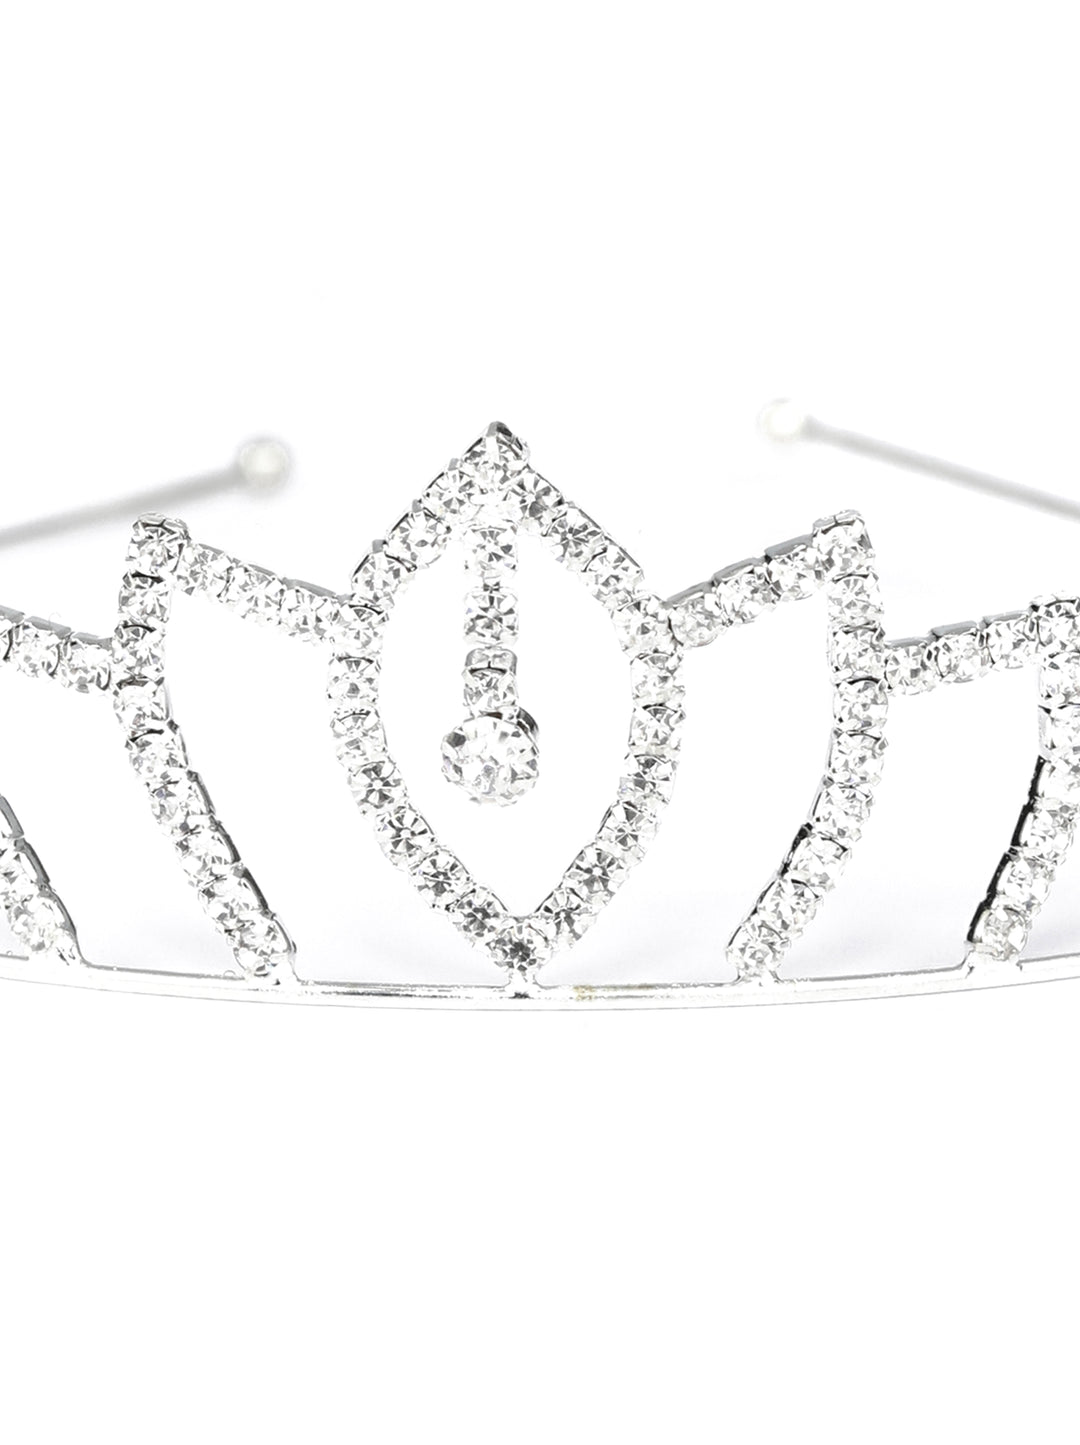 Silver Stone Embellished Princess Tiara Crown Hair Band